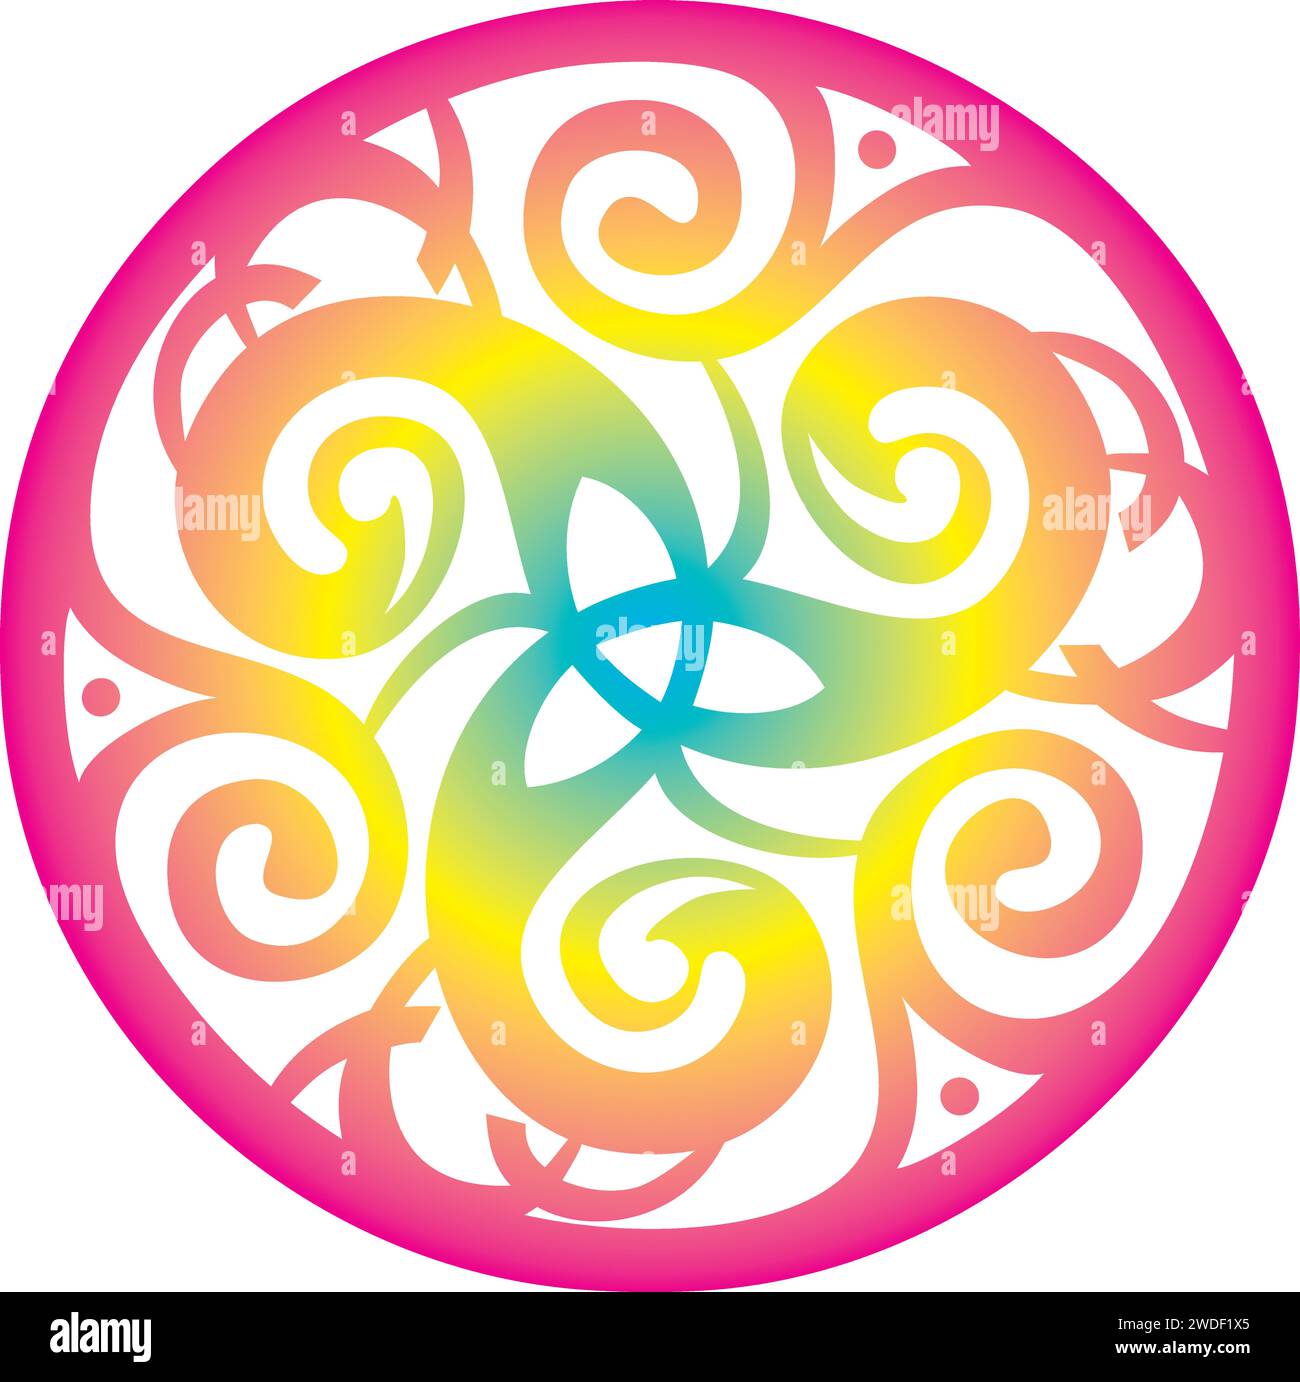 Symbole celtique nœud celtique cercle Triskelion Trinité géométrie Sacrée énergie - couleurs arc-en-ciel Illustration de Vecteur